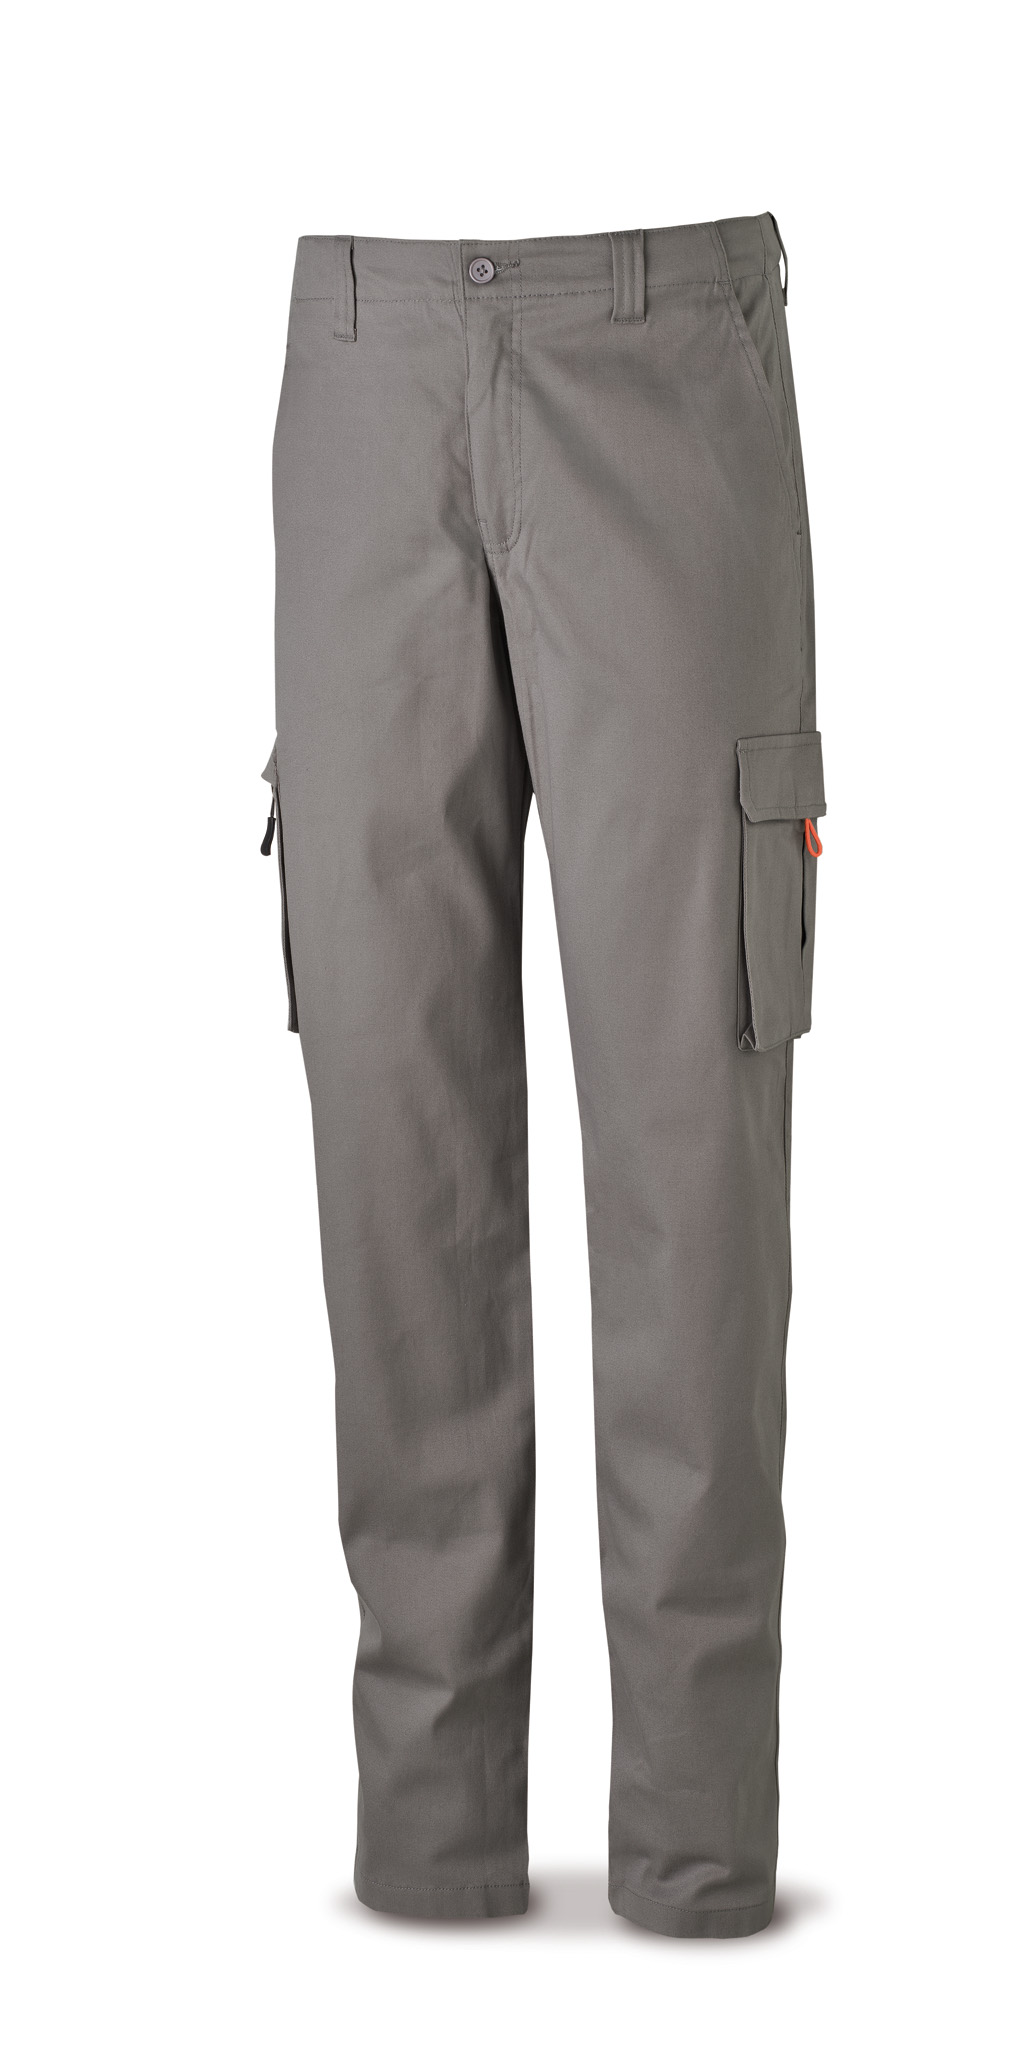 588-PELASRG Vestuario Laboral Serie Casual Pantalón STRETCH gris en algodón 260 gr. Multibolsillos